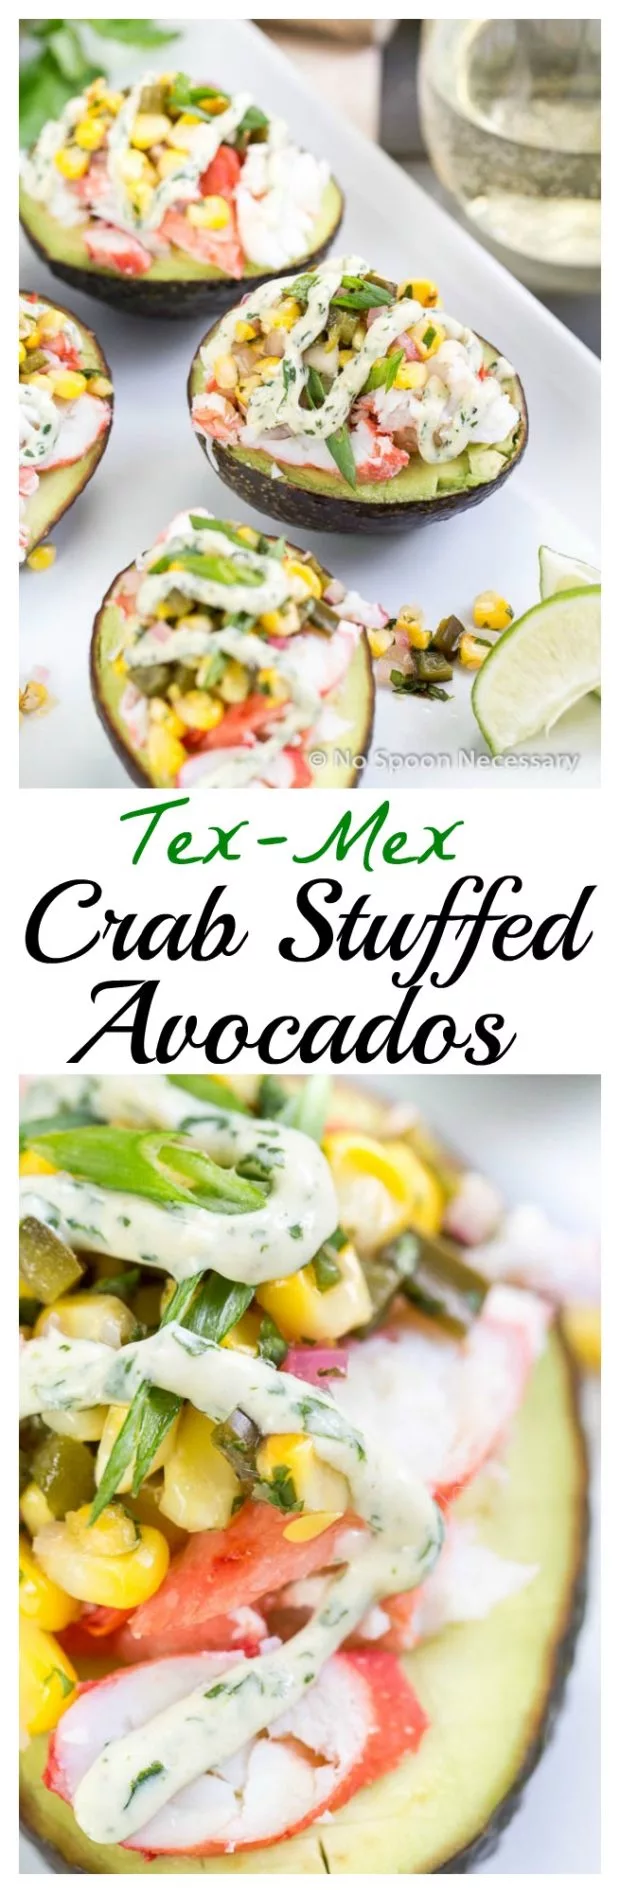 Tex Mex Crab Stuffed Avocados